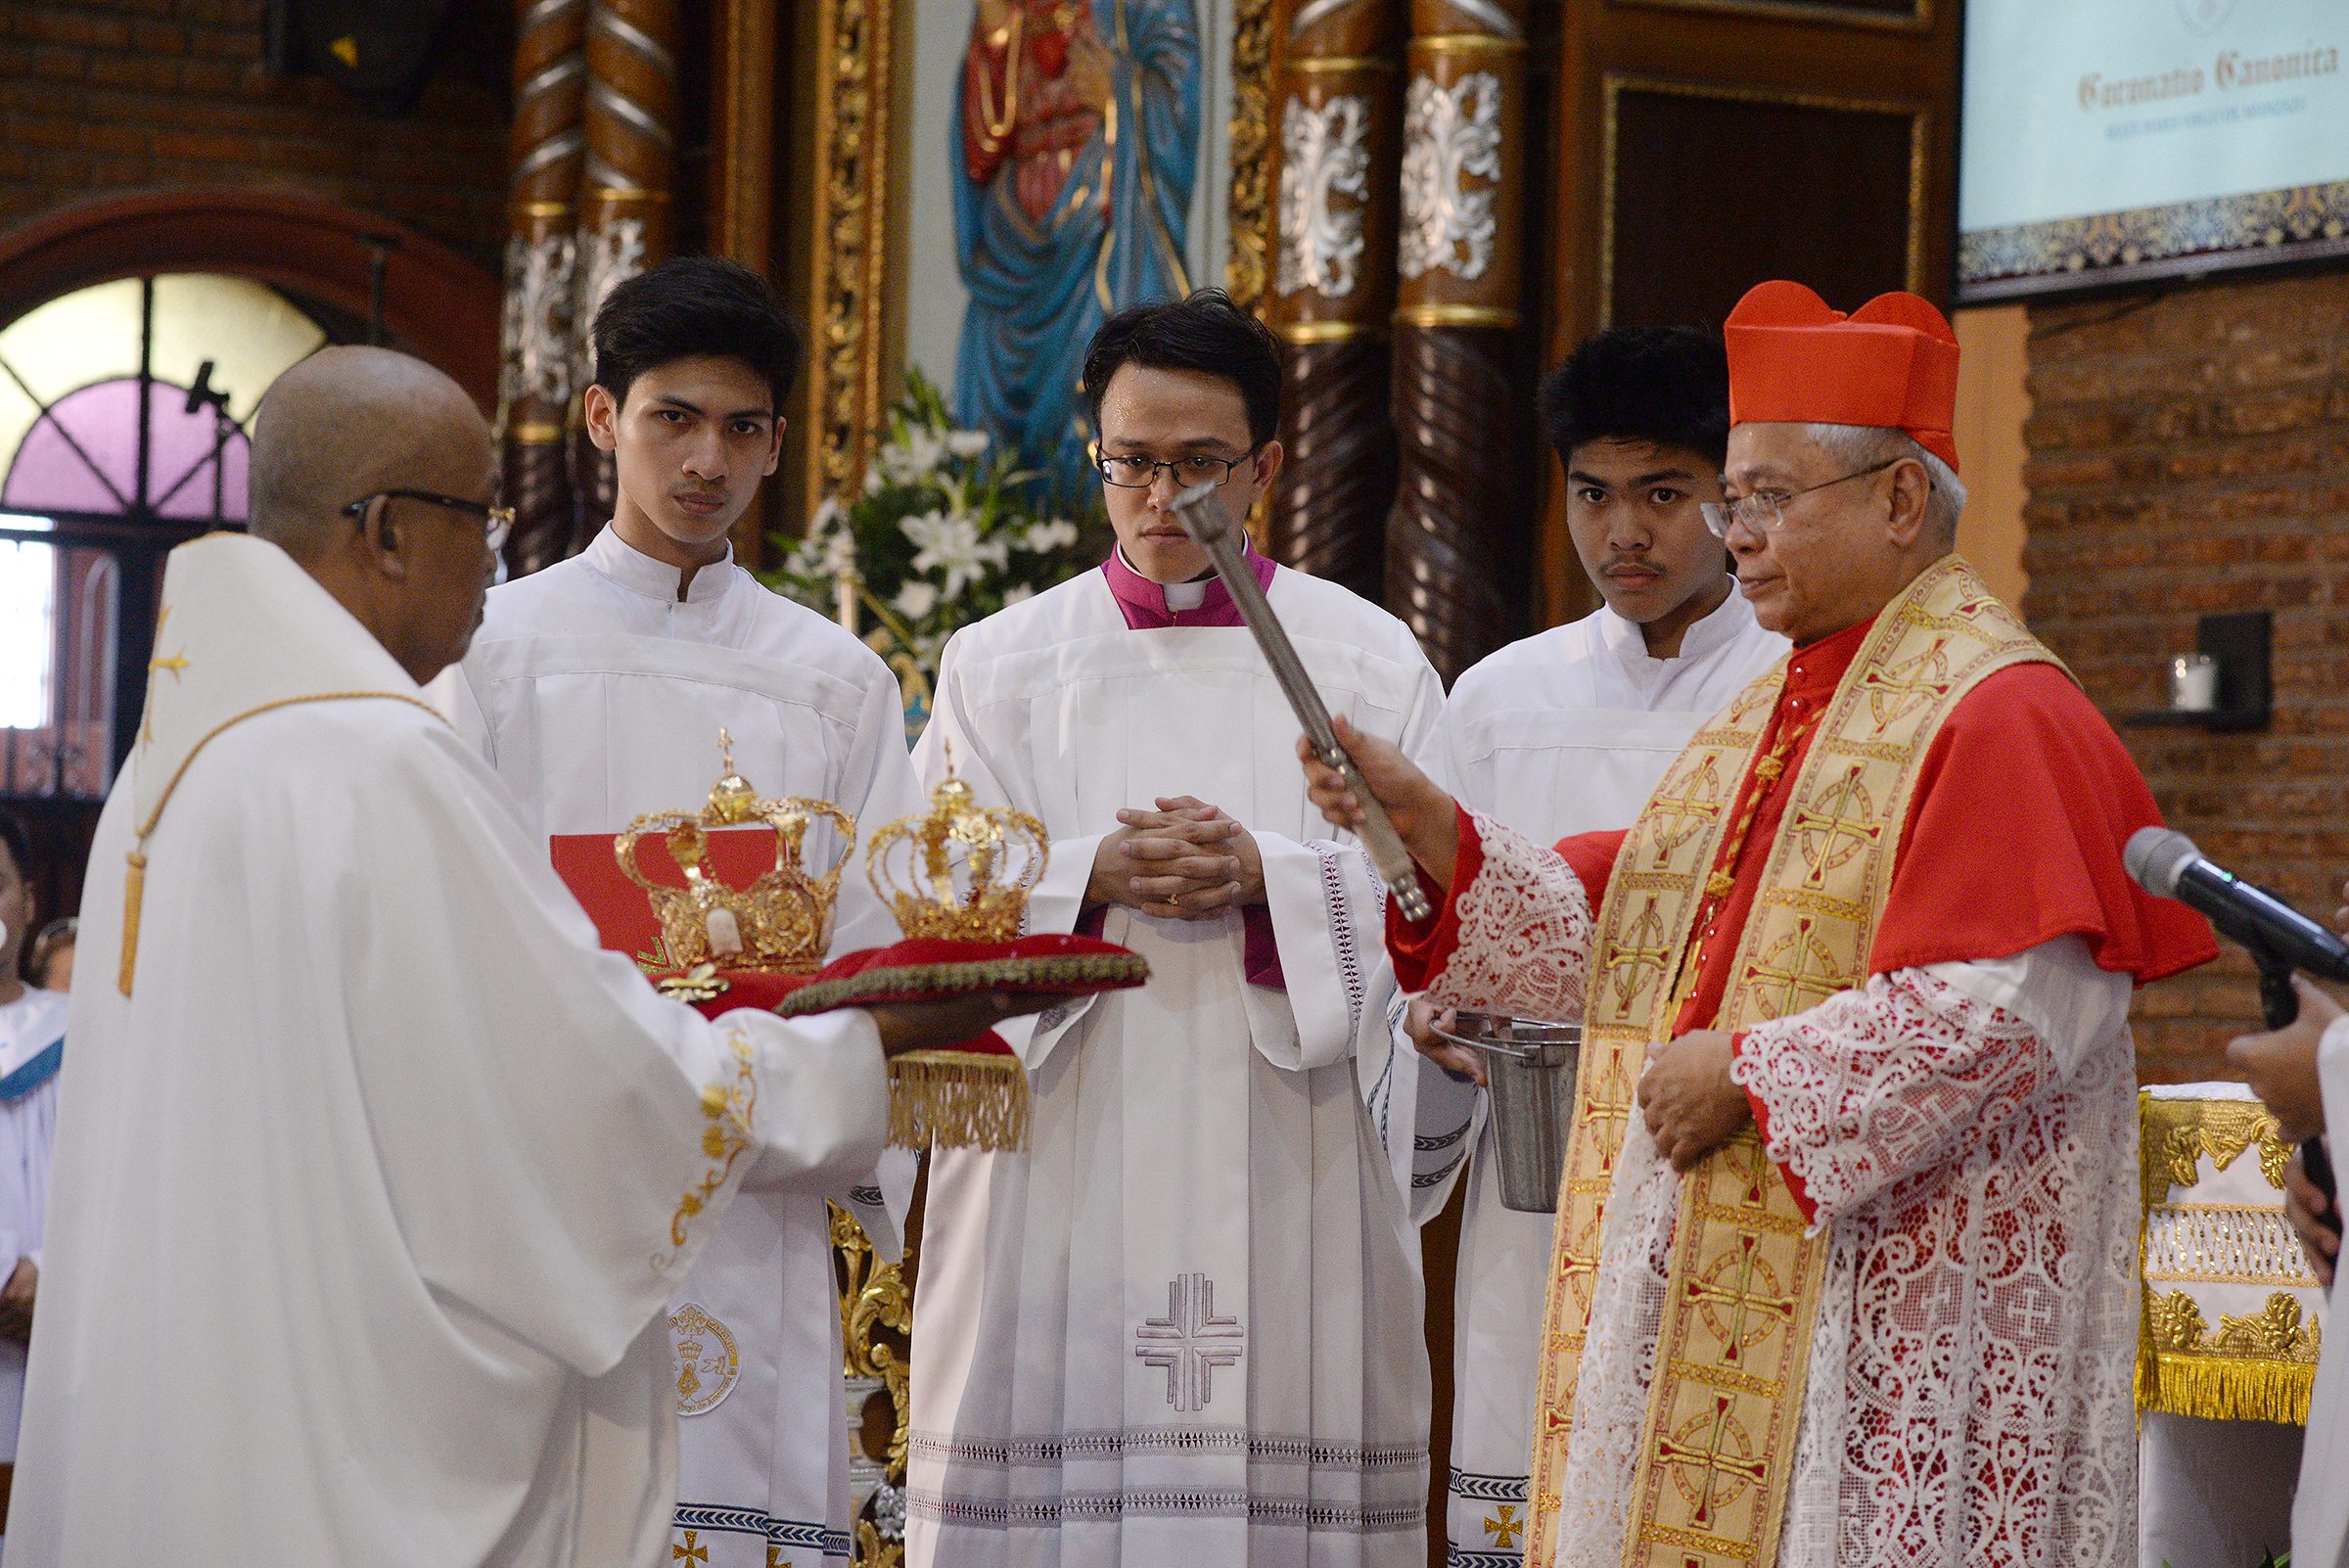 Cardinal Quevedo urges interreligious dialogue amid terror